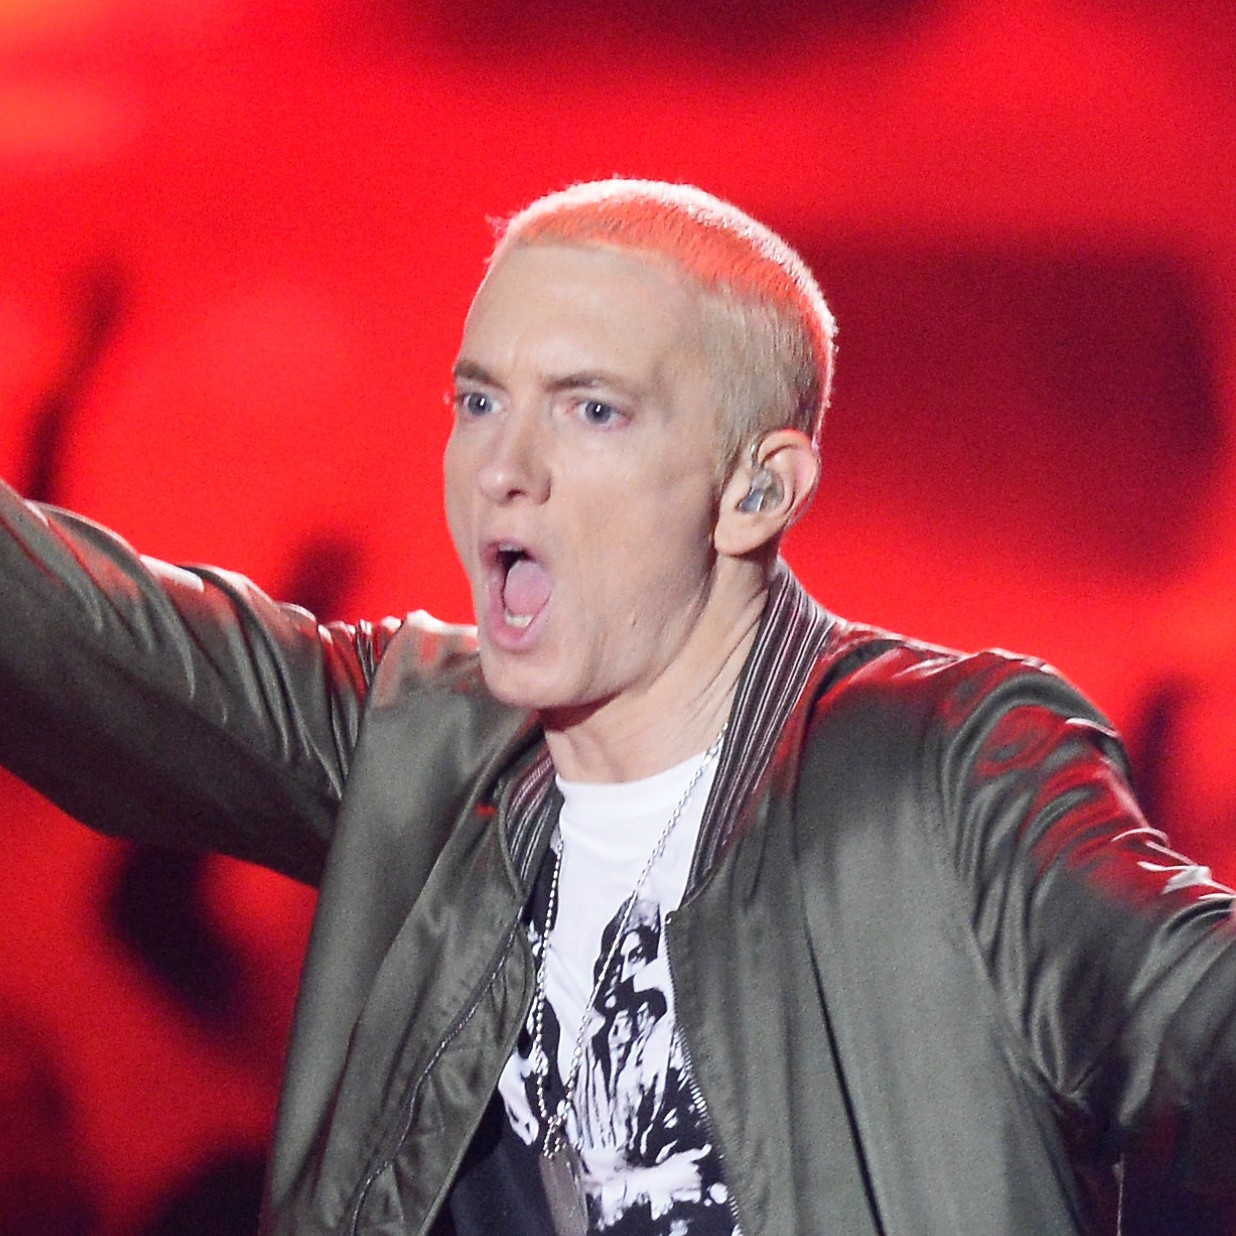 O rapper Eminem também já lutou contra o vício em álcool e outras drogas. Há muitos anos, venceu esse desafio e não ingere mais nada alcoólico. (Foto: Getty Images)